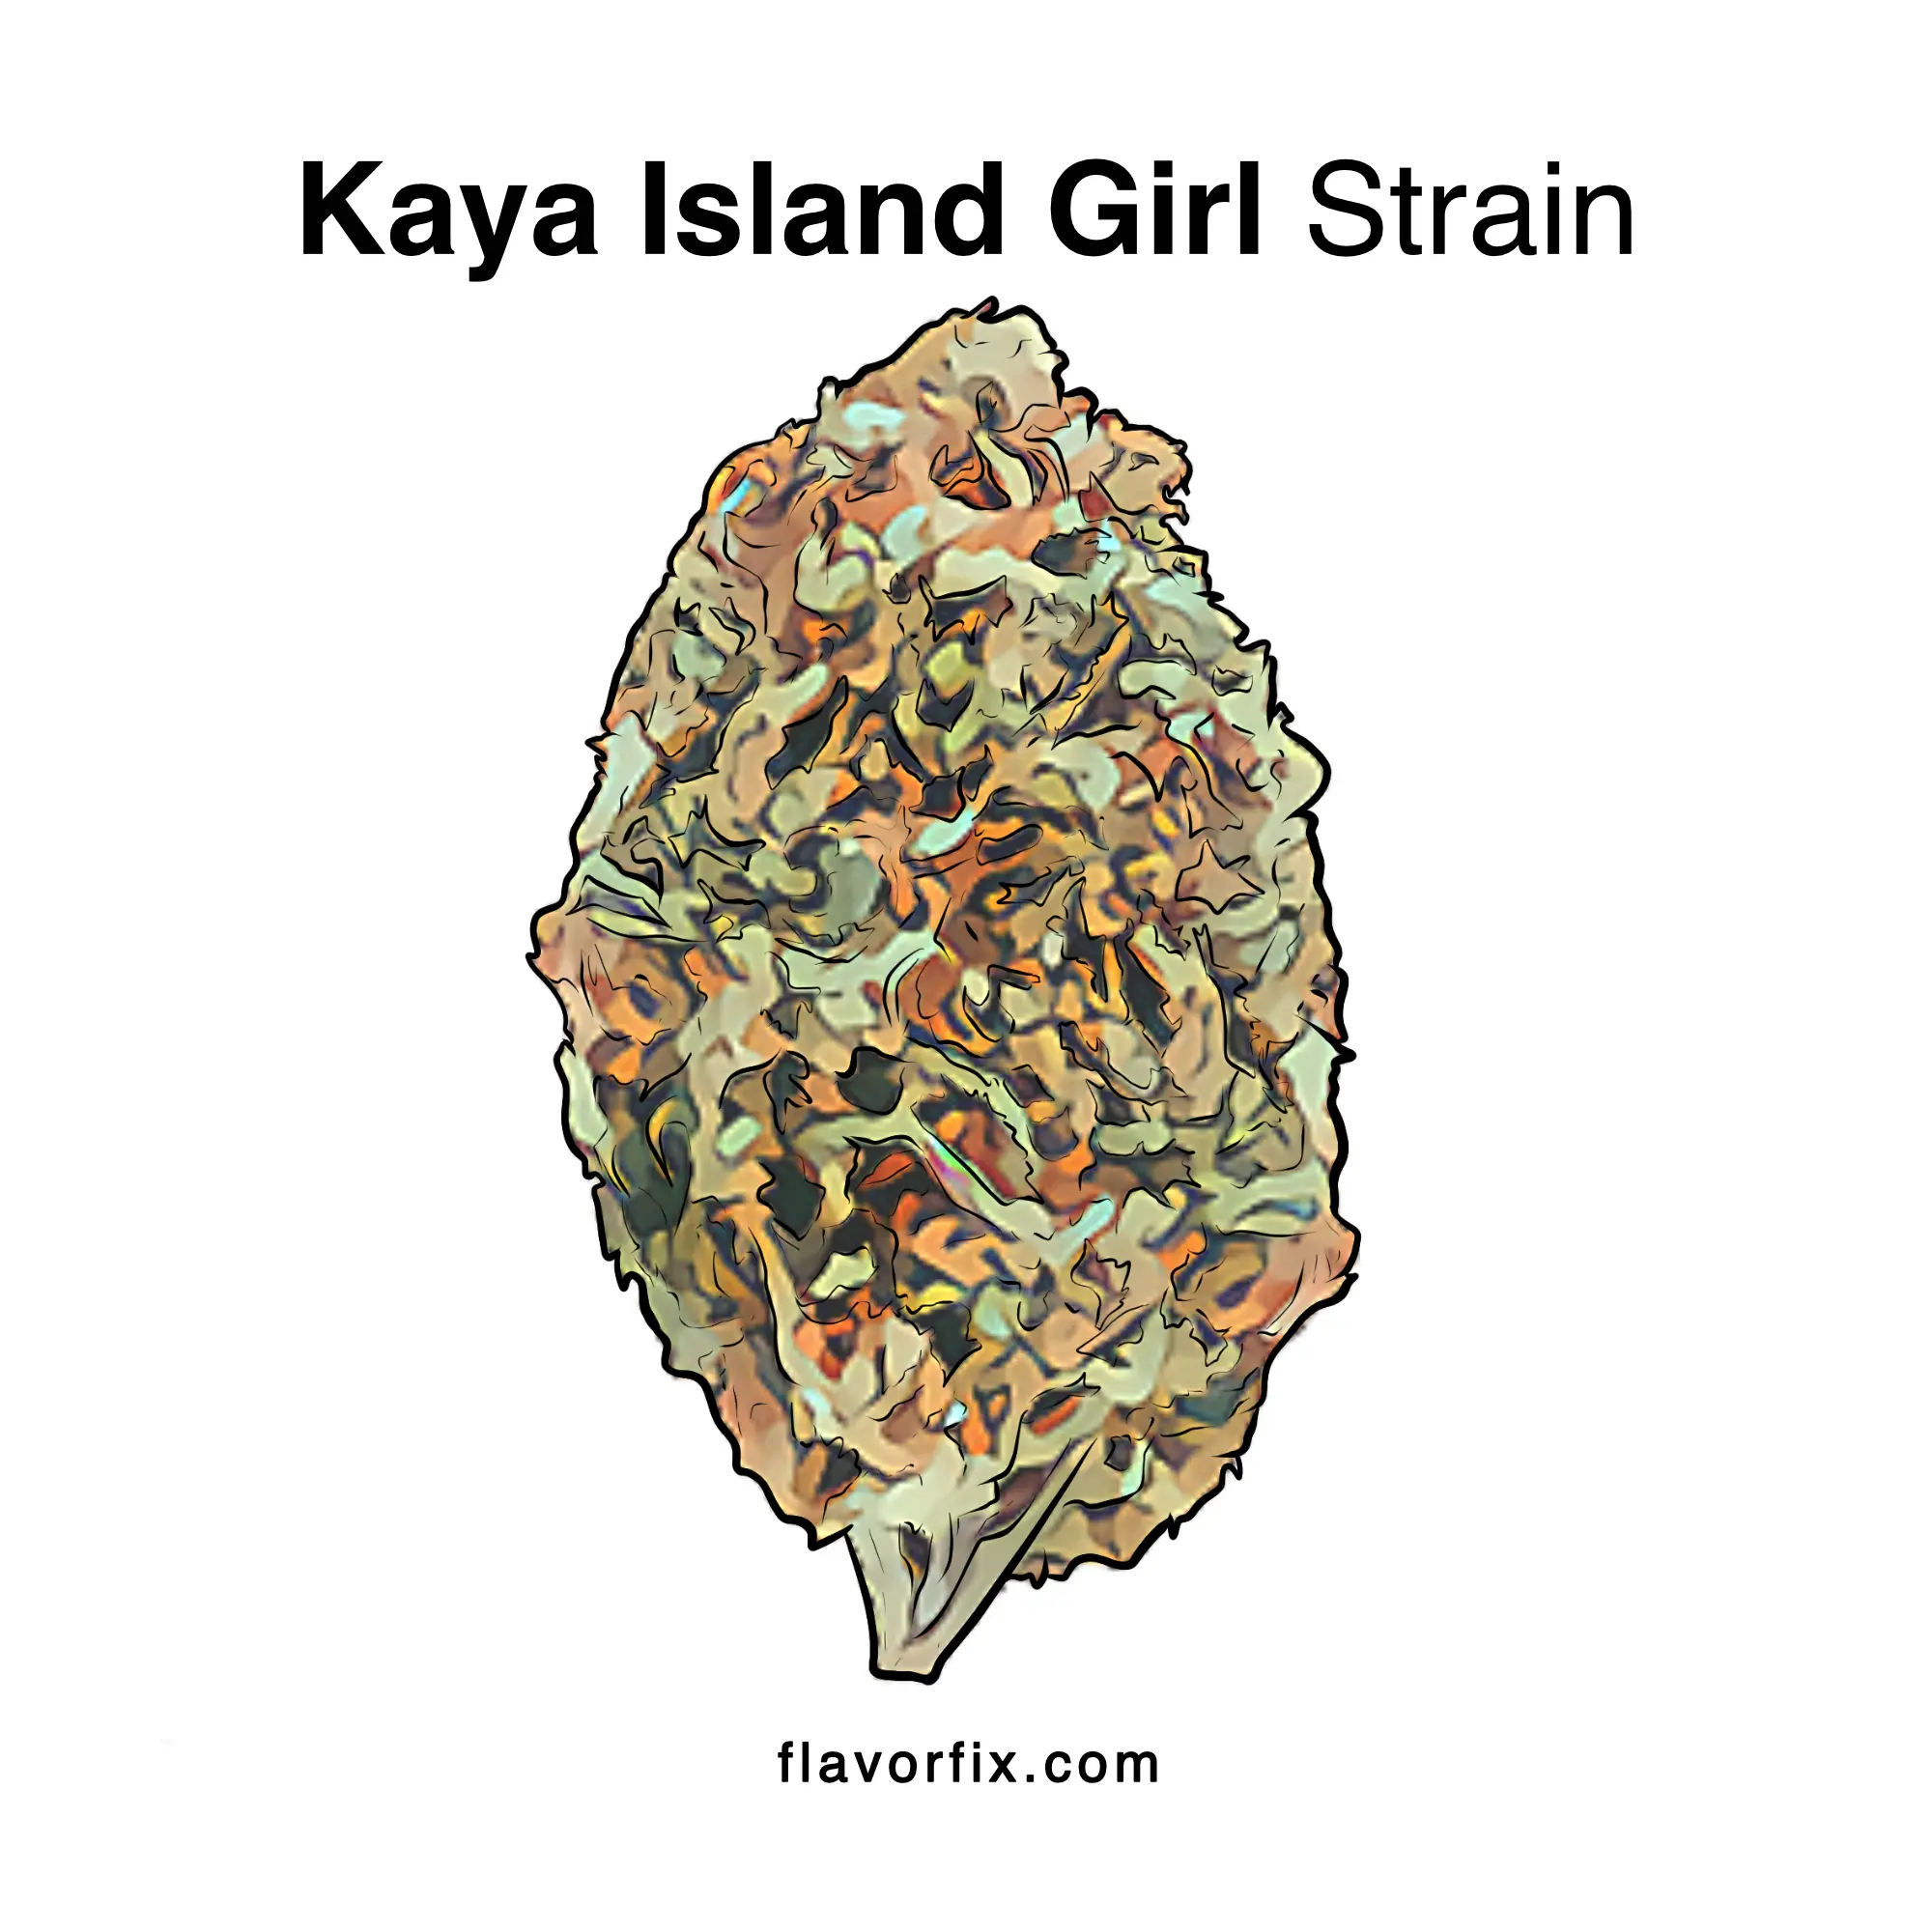 Kaya Island Girl Strain